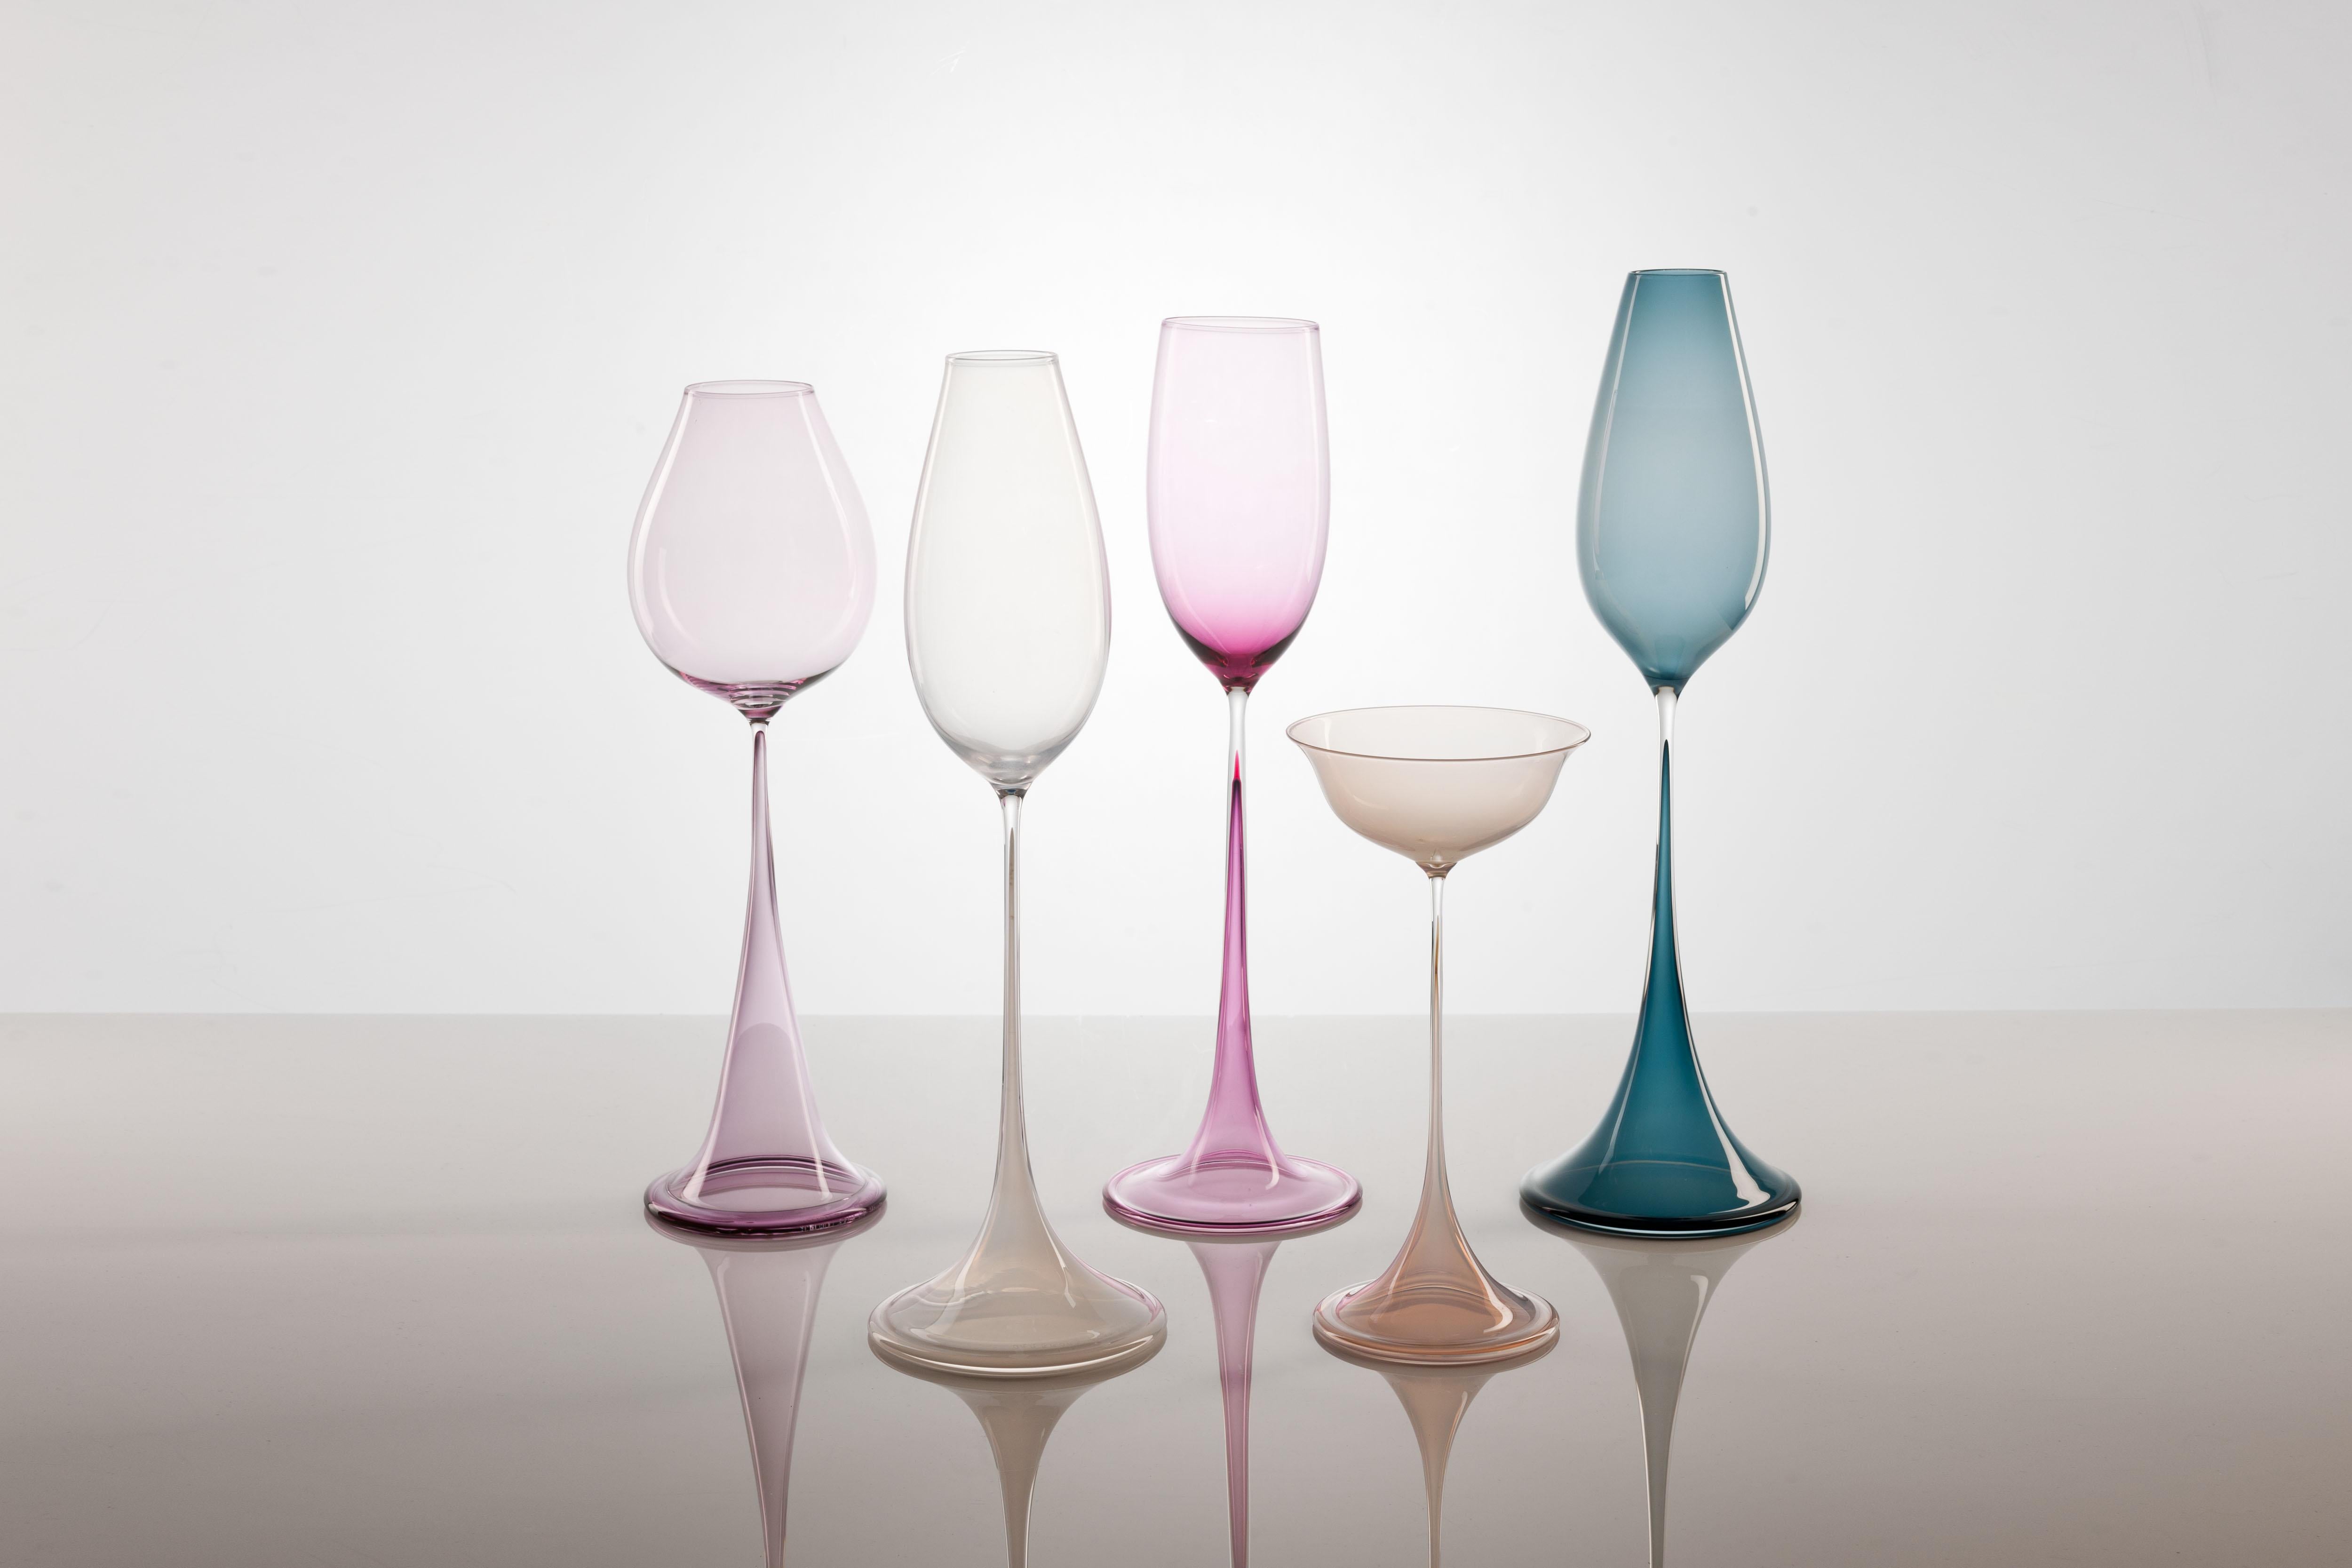 Délicats et éthérés, les vases Tulpan (Tulipe) du designer suédois Nils Landberg. 
À la fin des années 1940, Landberg a mis au point le verre élancé qui l'a rendu célèbre. Les tailles et les formes varient, l'objectif étant d'obtenir des longueurs